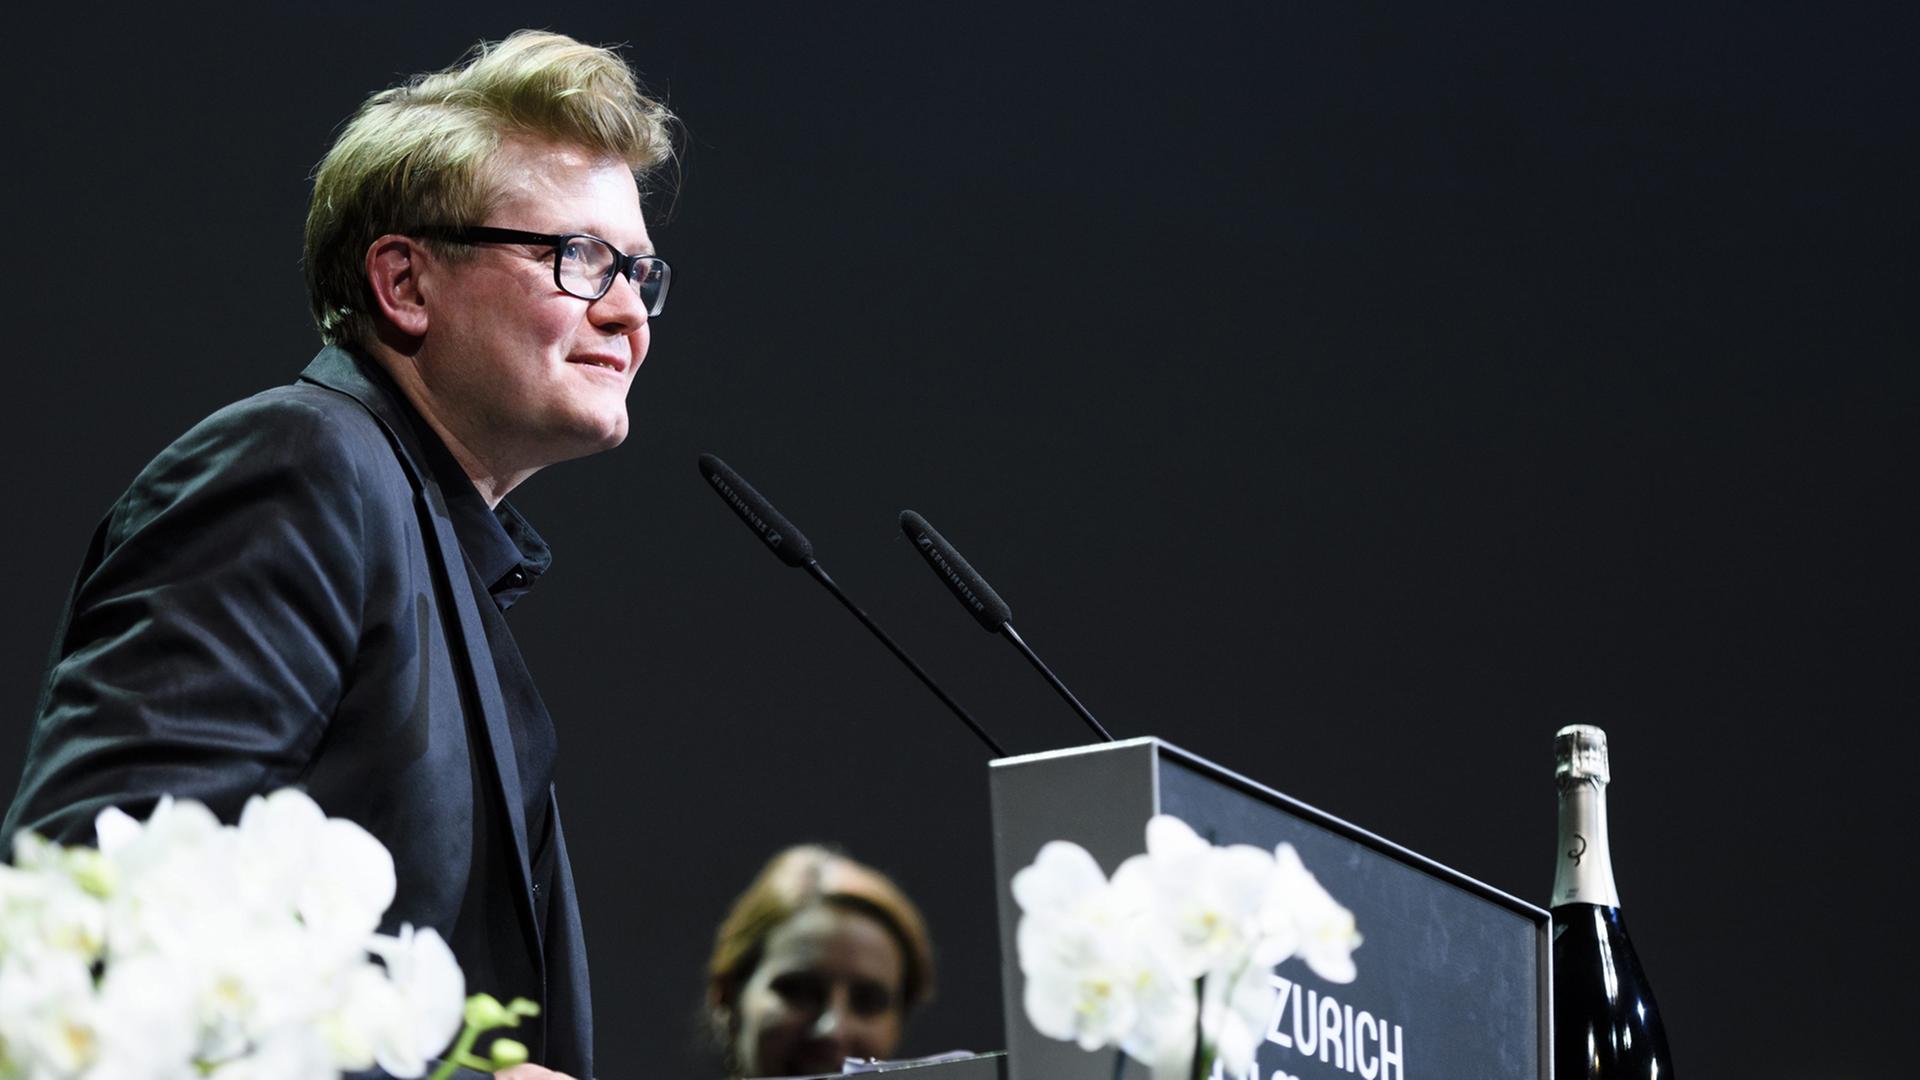 Regisseur Valentin Hitz beim "Zurich Film Festival": "Stille Reserven" wurde hier als bester Film der Kategorie "Fokus Schweiz, Deutschland, Österreich" ausgezeichnet (2016).